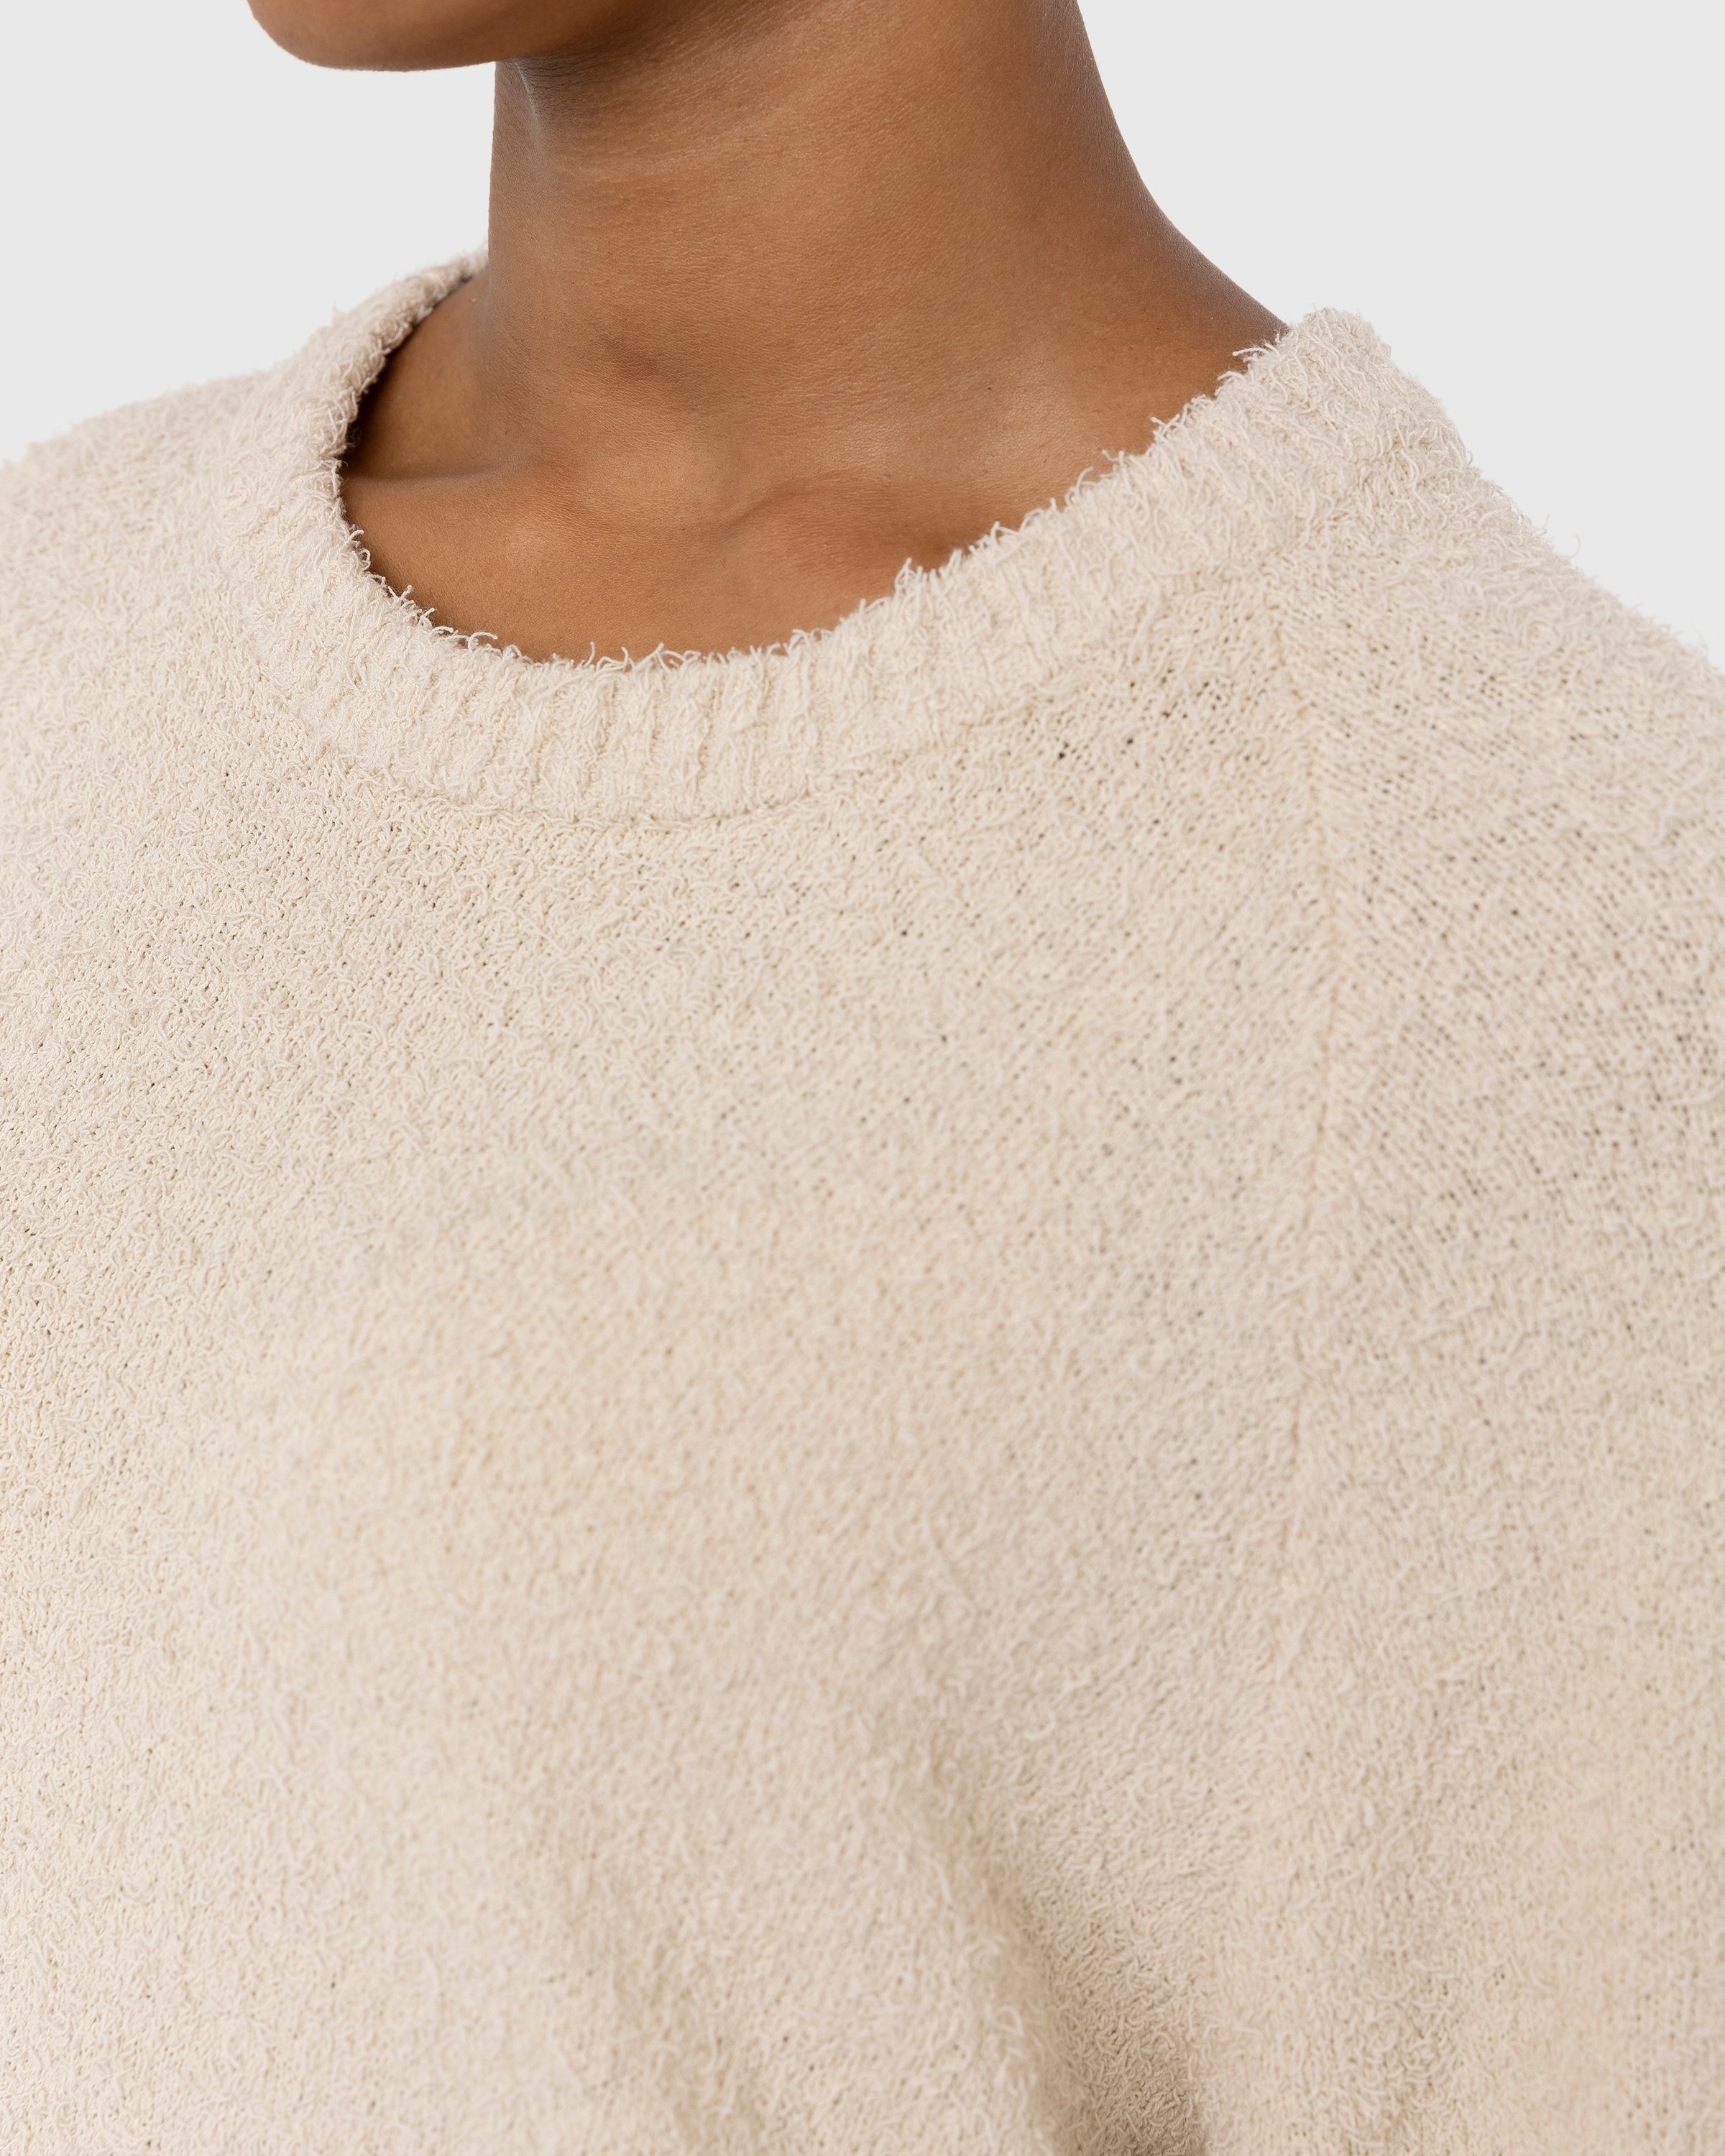 Highsnobiety – Raglan Crewneck Sweater Beige - Crewnecks - Beige - Image 6